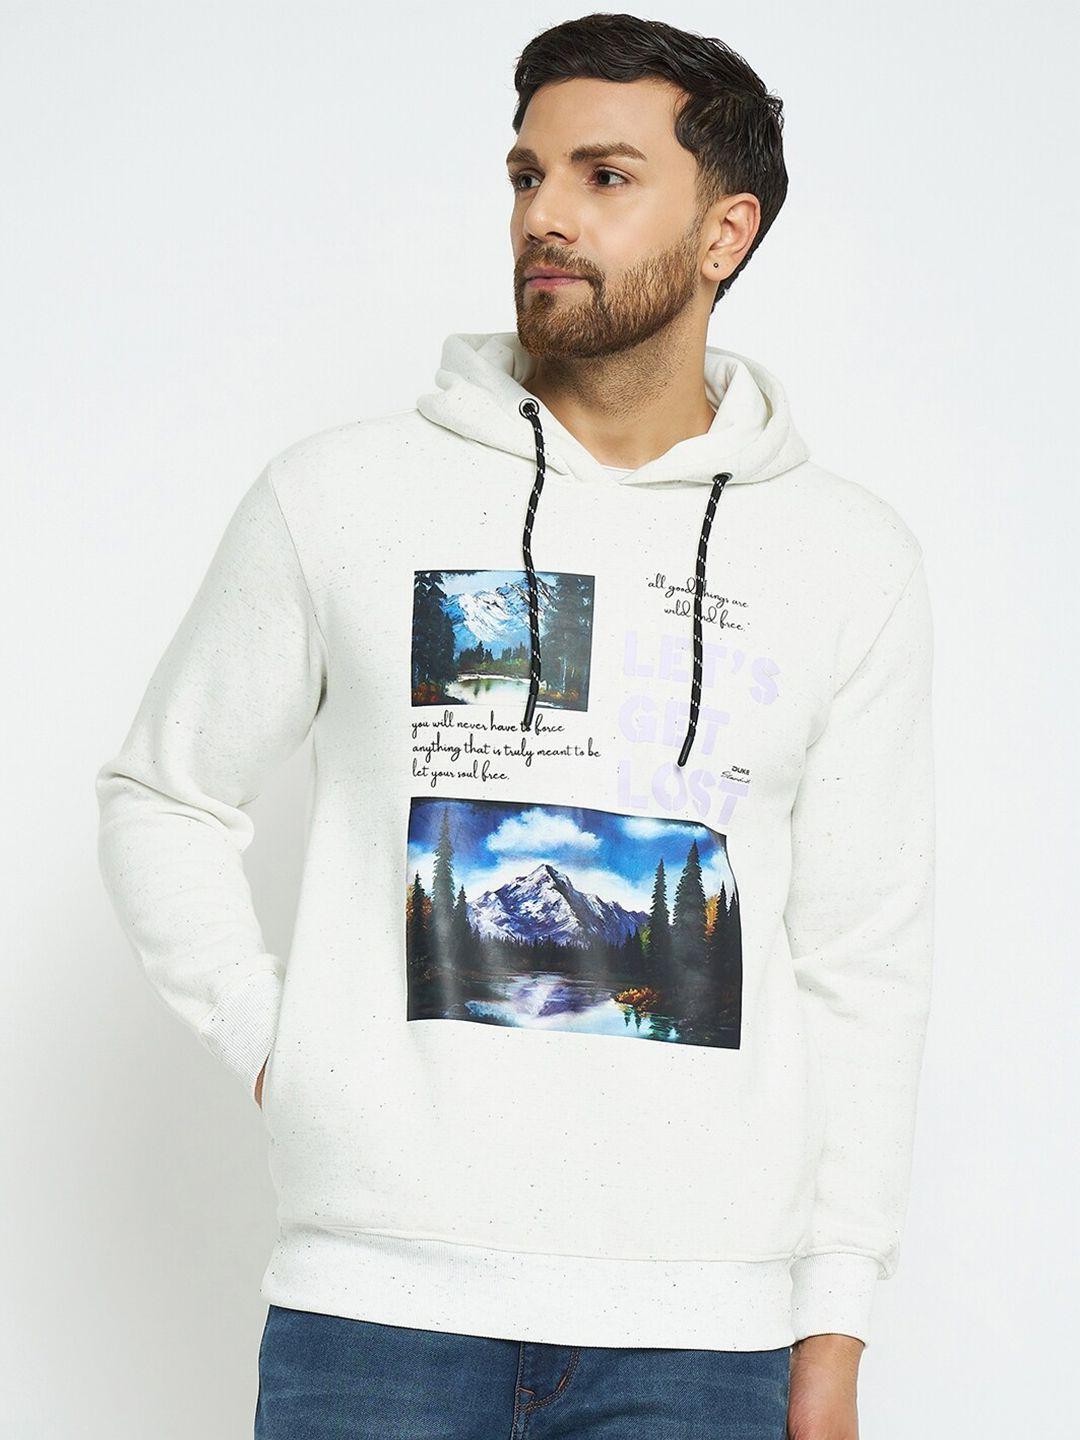 duke graphic printed hooded sweatshirt